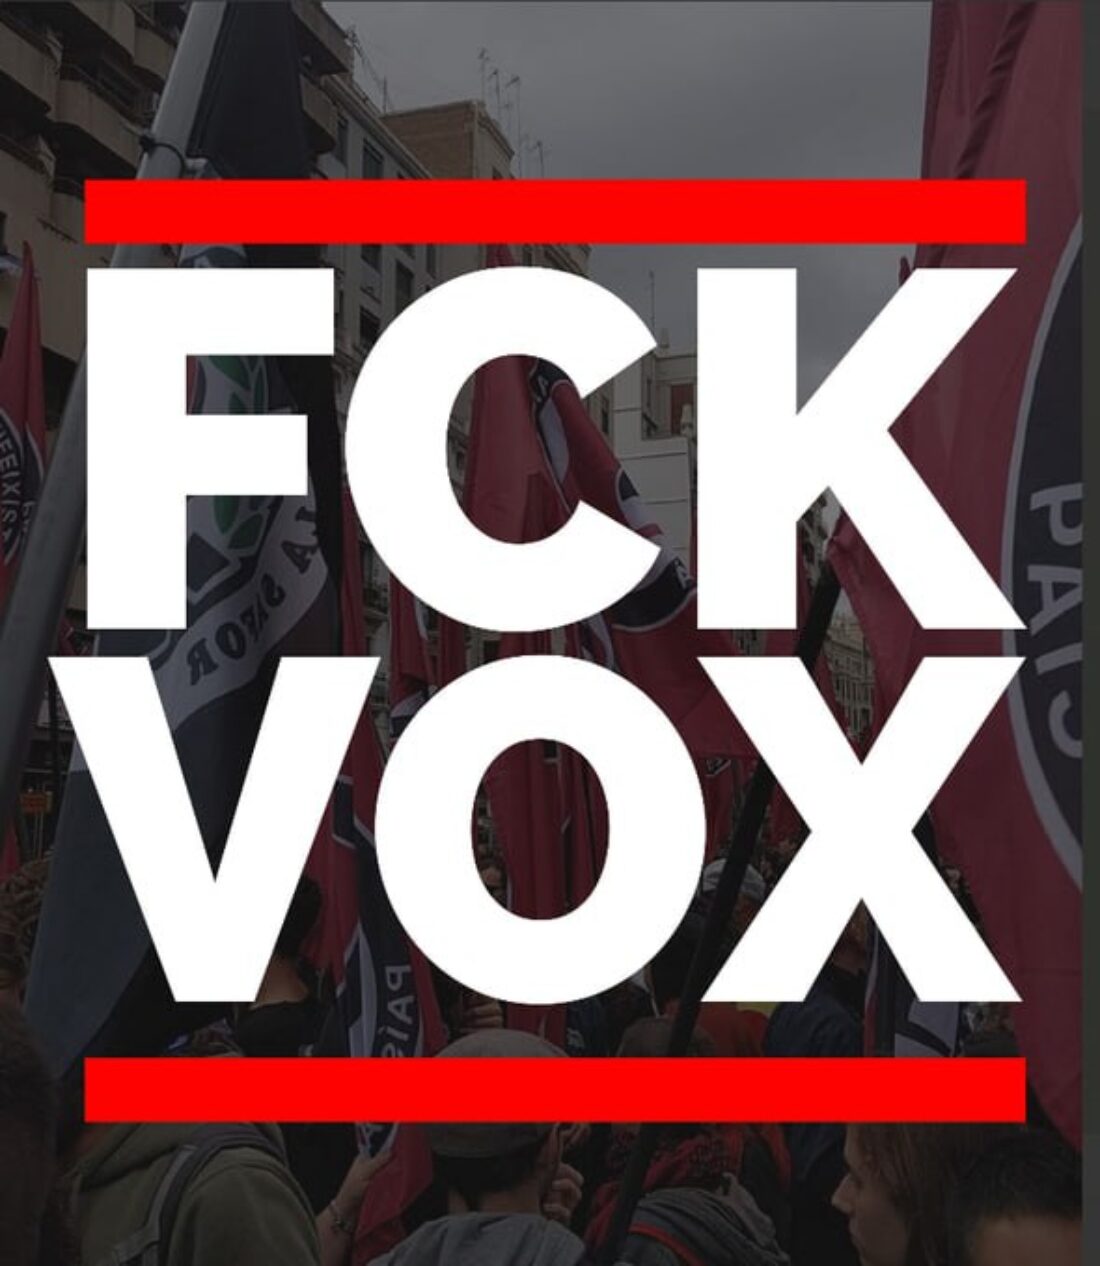 CGT muestra su rechazo a la reunión de la extrema derecha internacional, organizada por VOX para este domingo en Madrid.